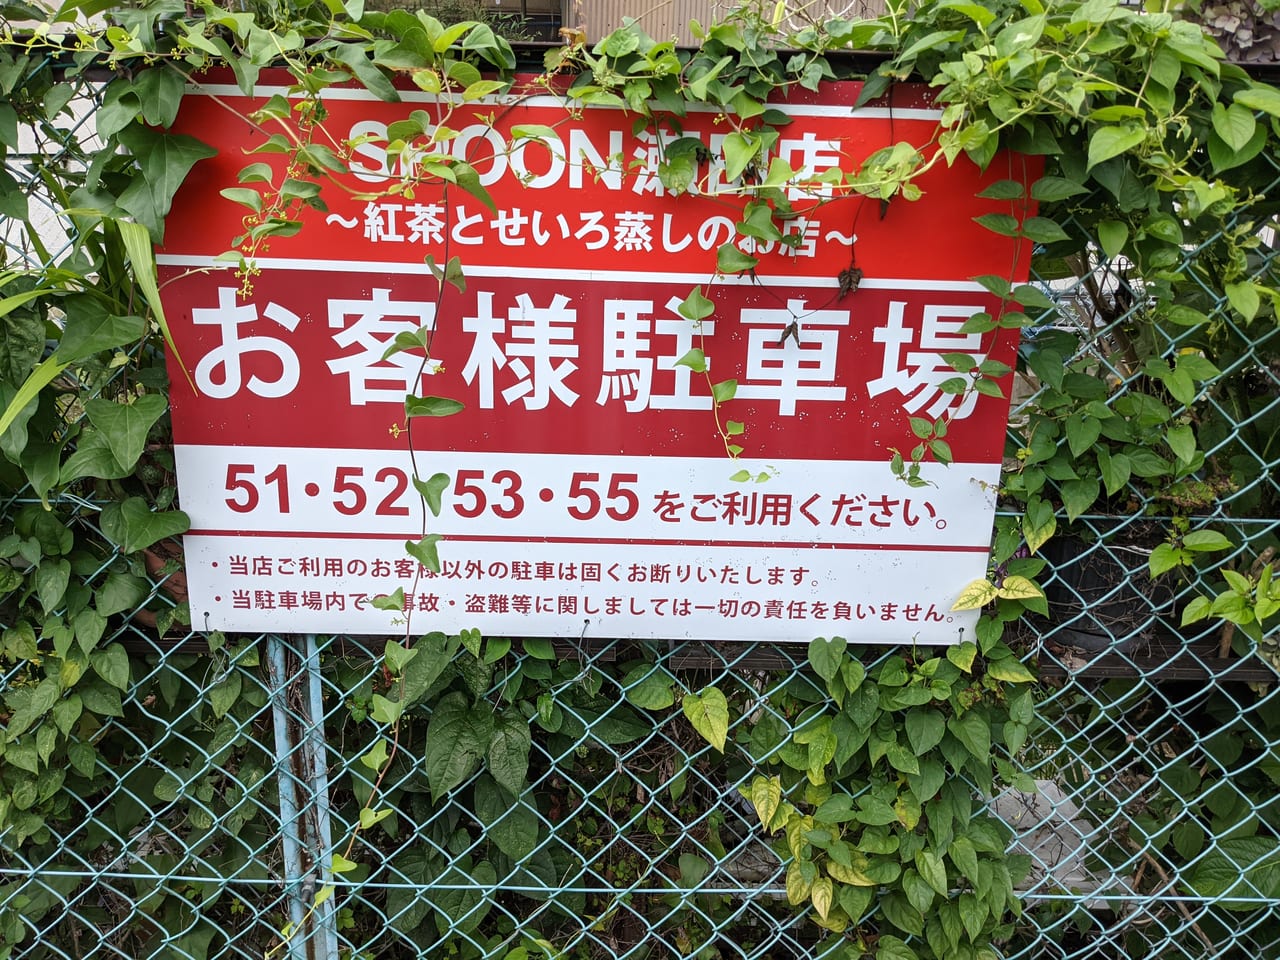 SPOON瀬田店